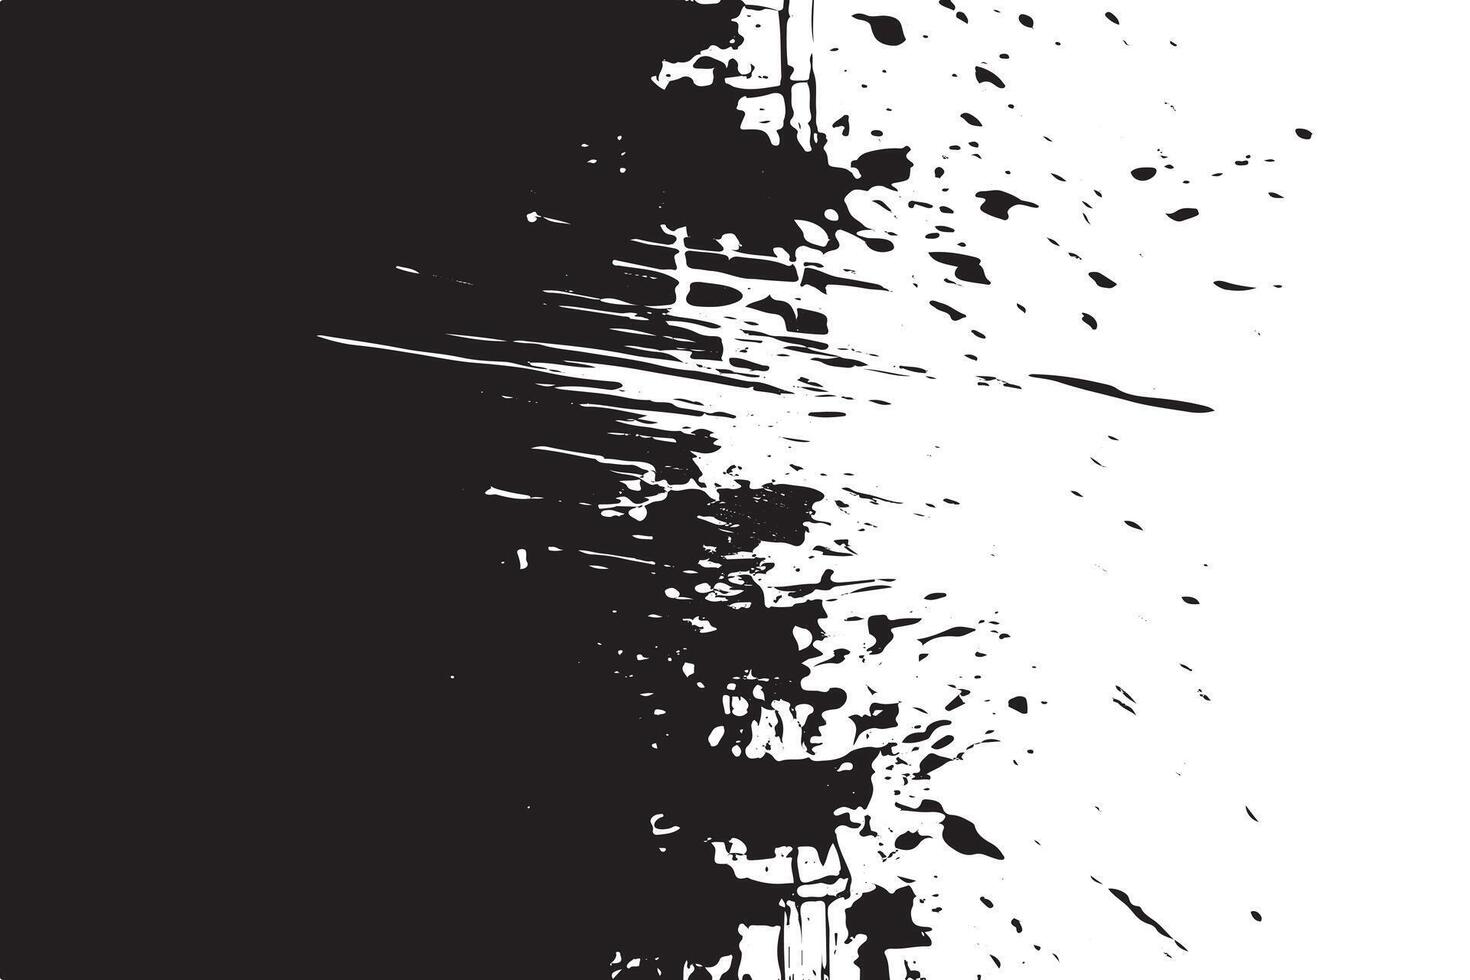 schwarz grobkörnig Grunge auf Weiß Segeltuch Overlay einfarbig Hintergrund Textur vektor